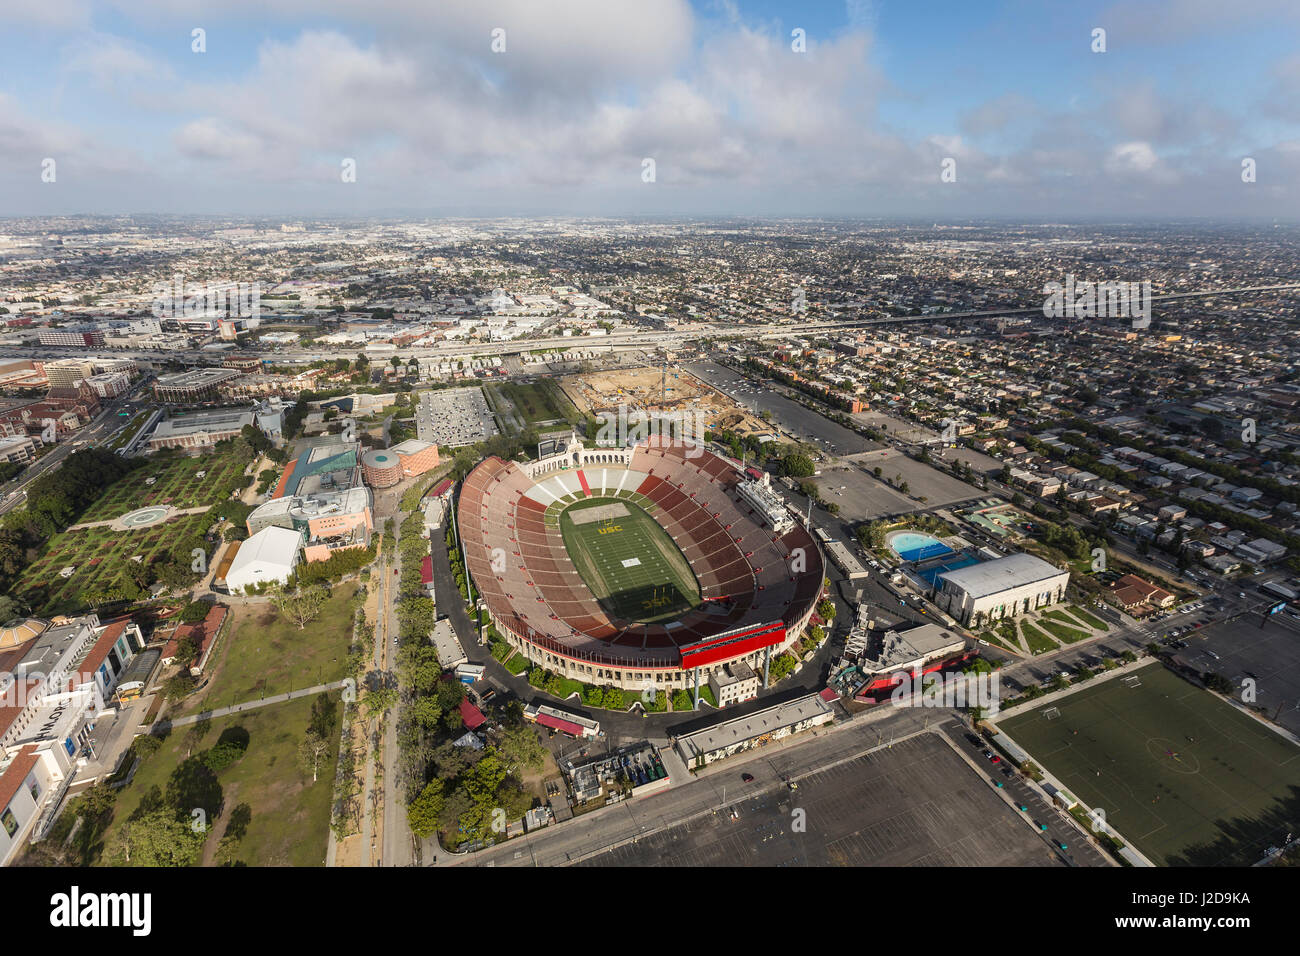 Los Angeles, California, Stati Uniti d'America - 12 Aprile 2017: Veduta aerea della storica Coliseum stadium vicino alla University of Southern California. Foto Stock